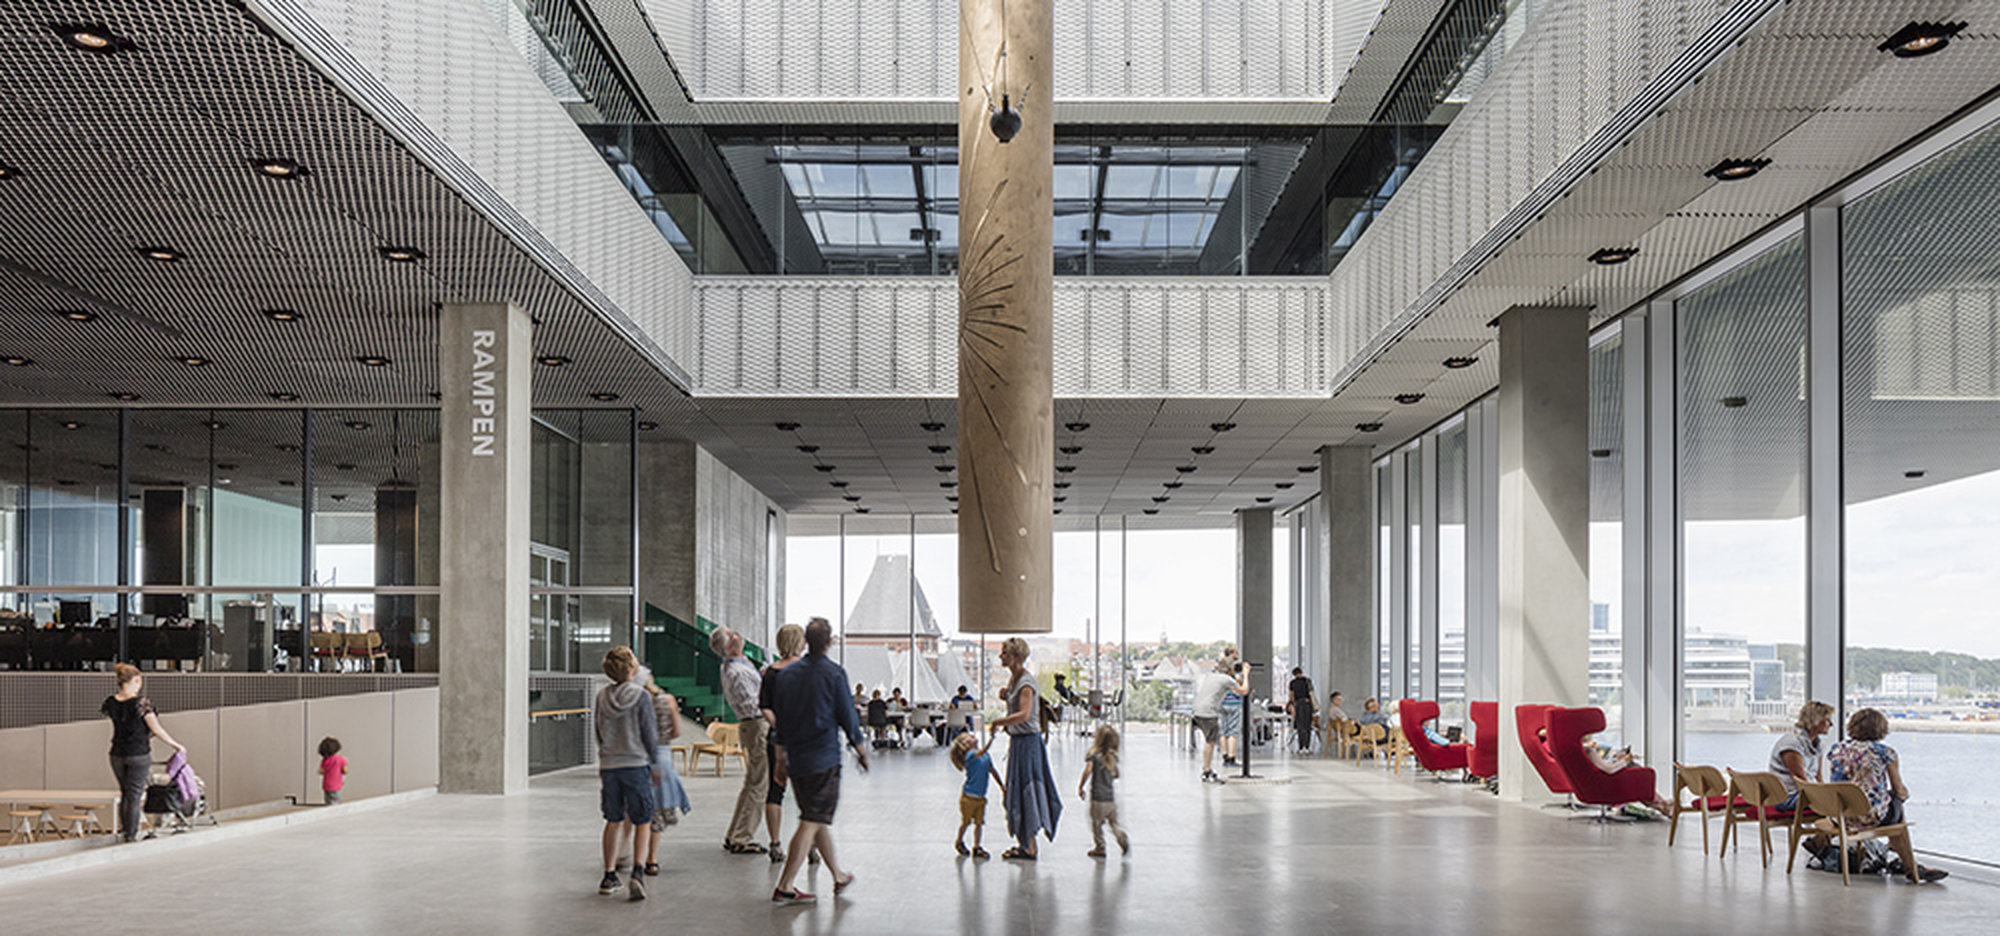 В большом и светлом вестибюле выставляются современные арт-объекты, в том числе, достаточно крупные и сложные для экспонирования. Например, висящие над головой посетителей.